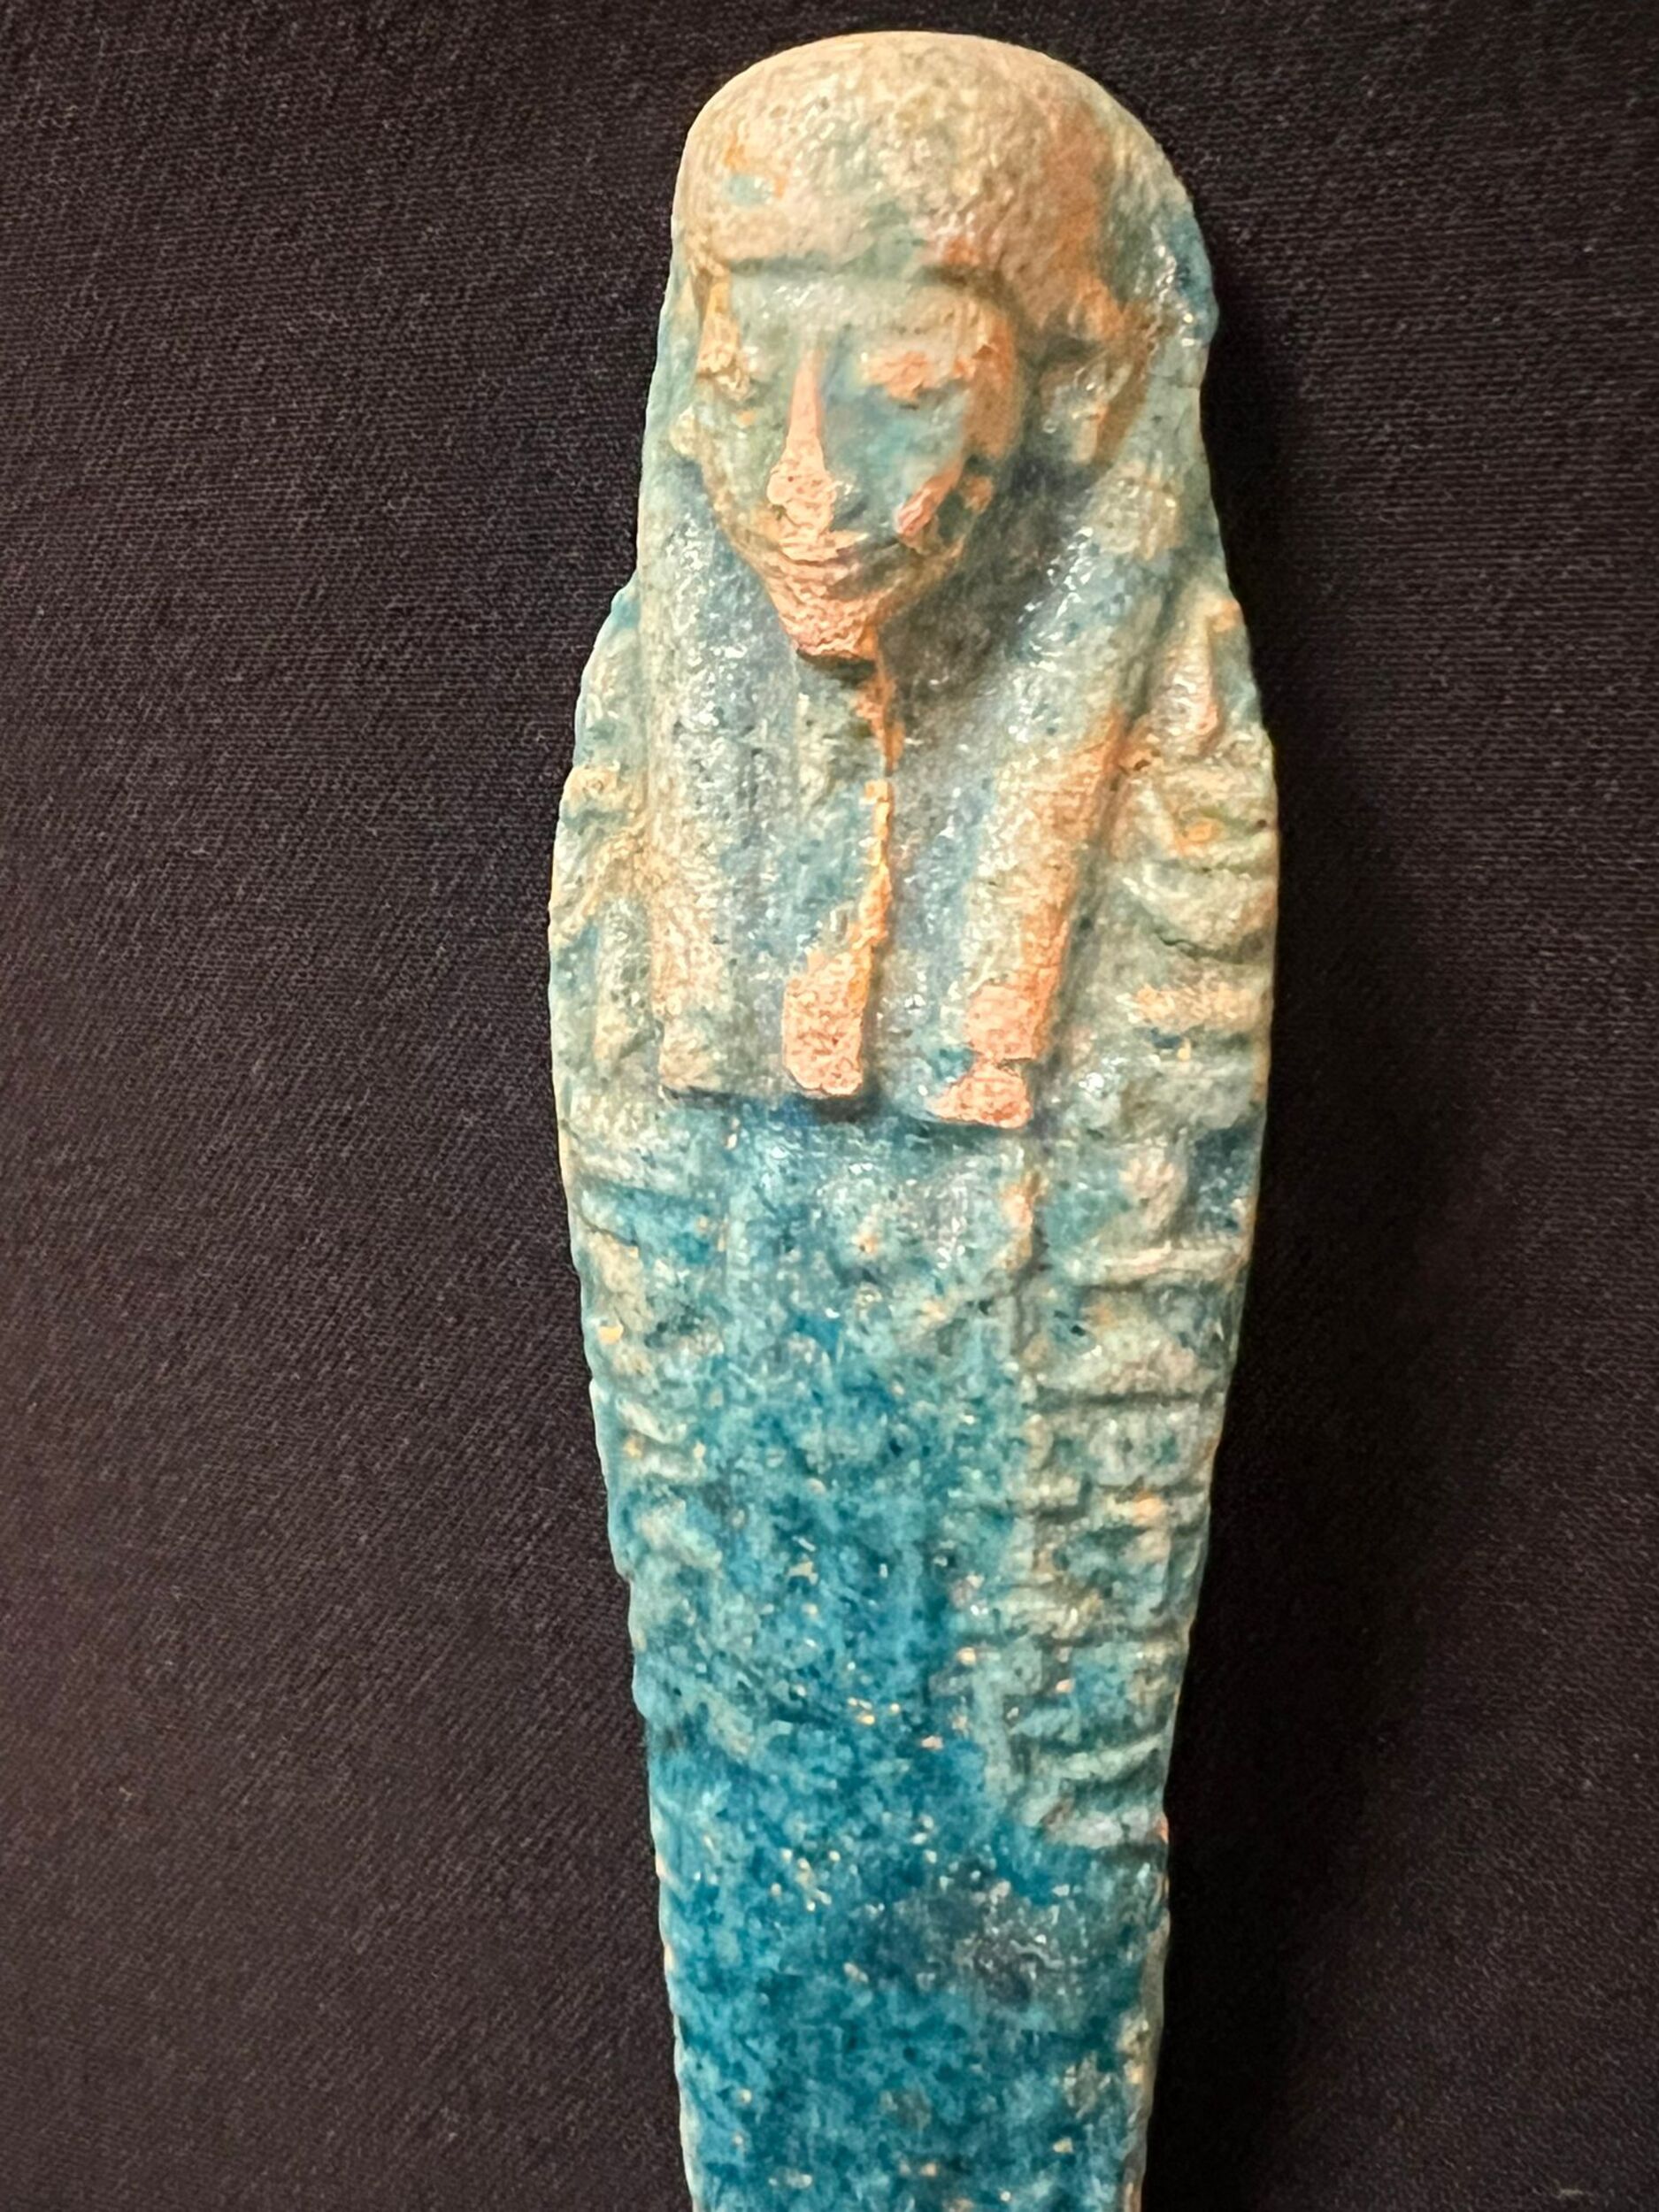 Decorative Egyptian ushabti in turquoise glazed ceramic, possibly 19th century Egypt - Image 4 of 4